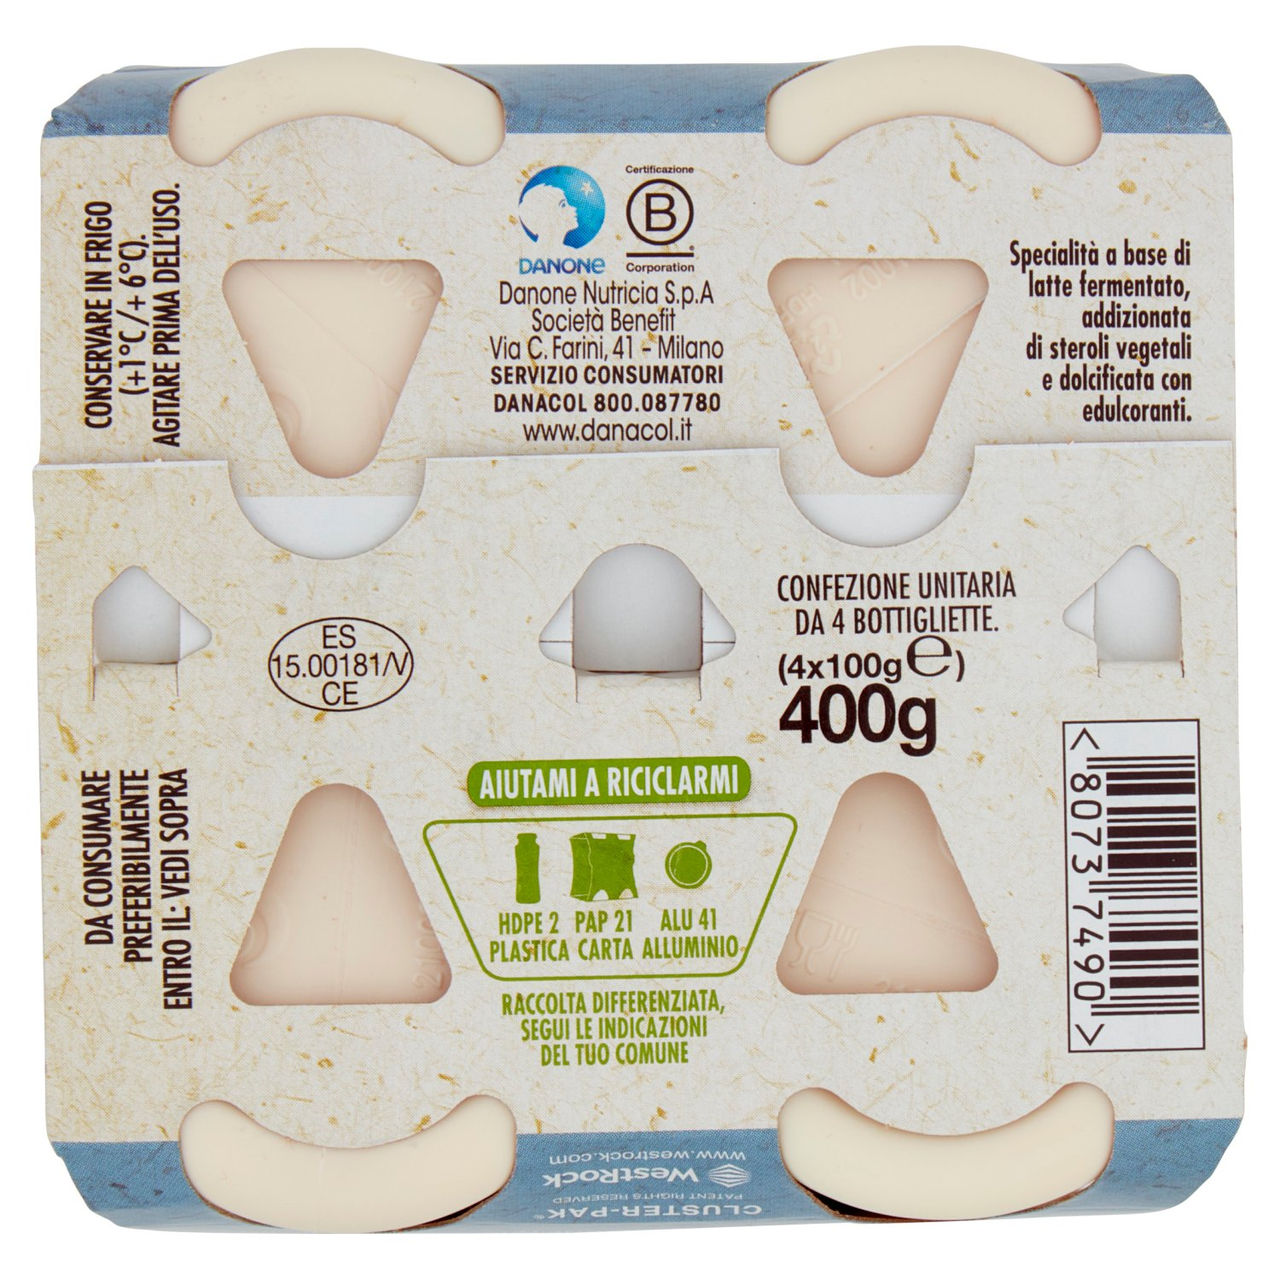 DANACOL Yogurt da bere, Riduce il Colesterolo grazie agli Steroli Vegetali, Bianco Naturale, 4x100g